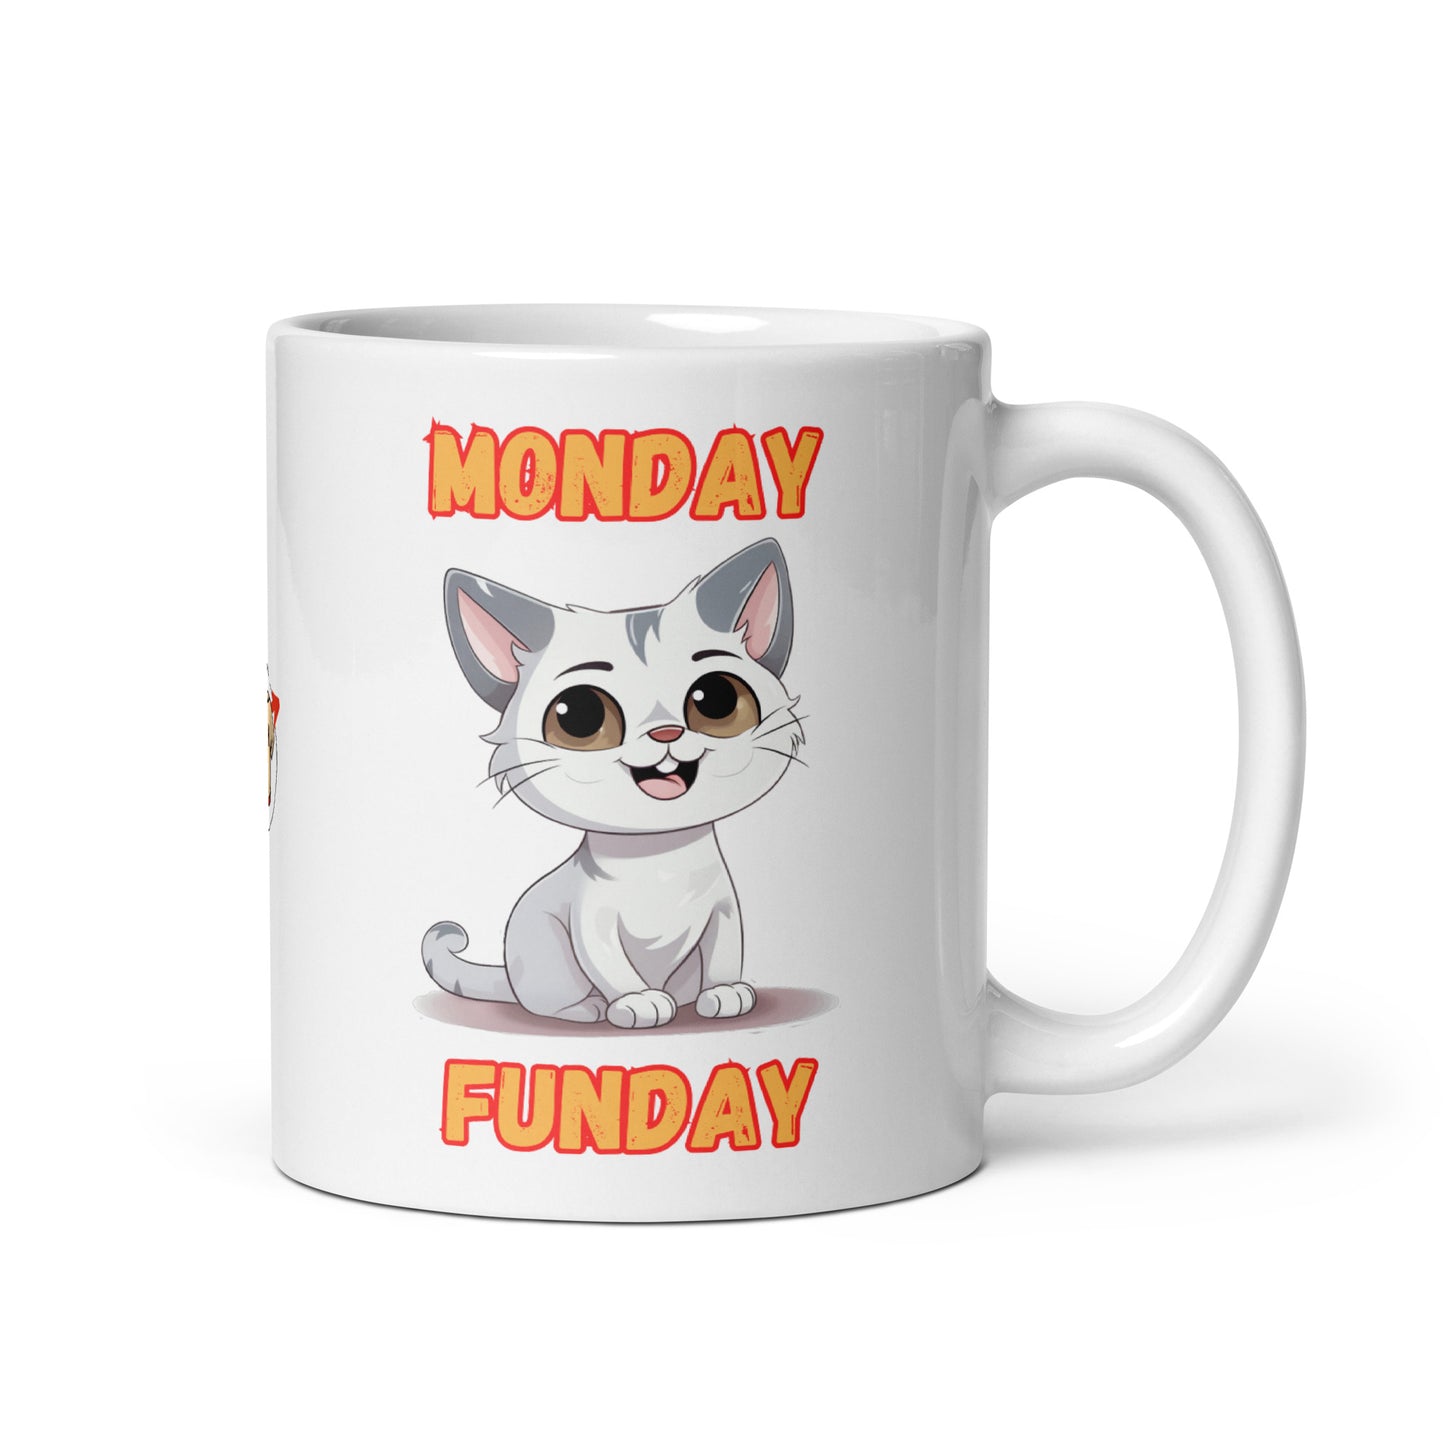 Monday Funday mug